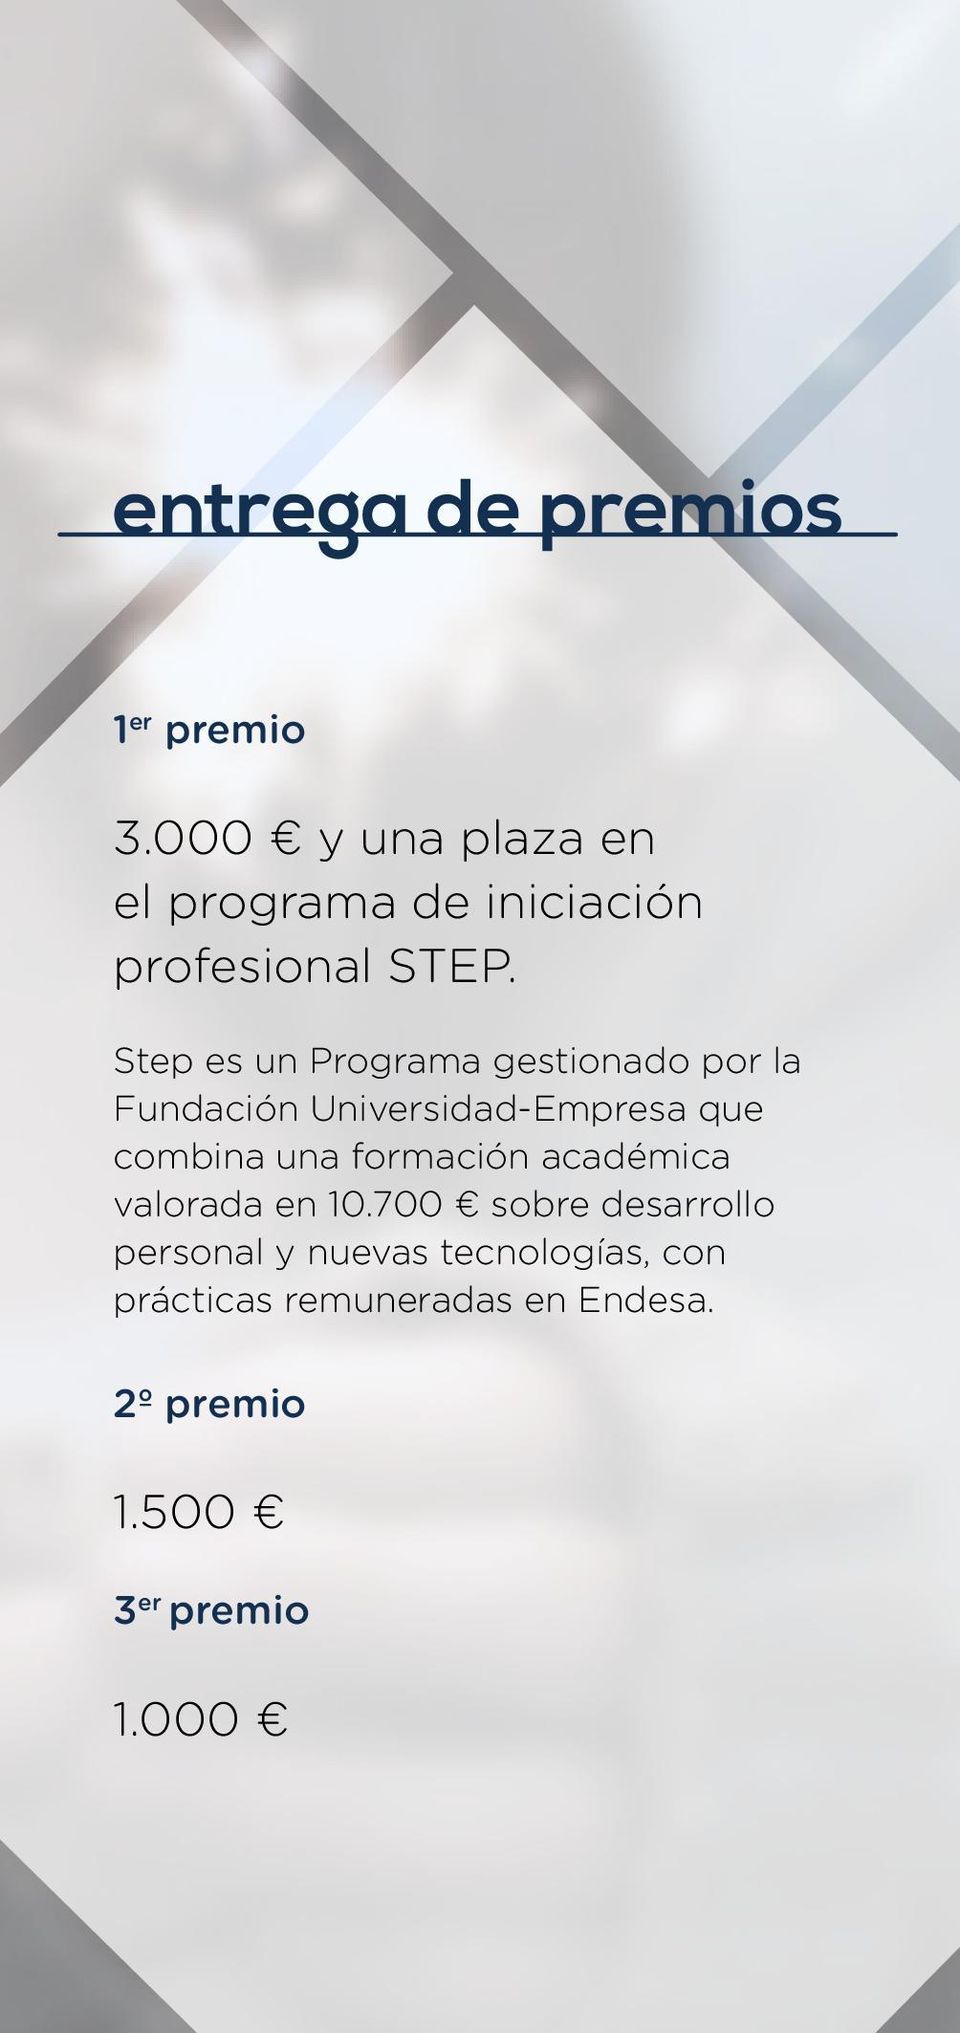 Step es un Programa gestionado por la Fundación Universidad-Empresa que combina una